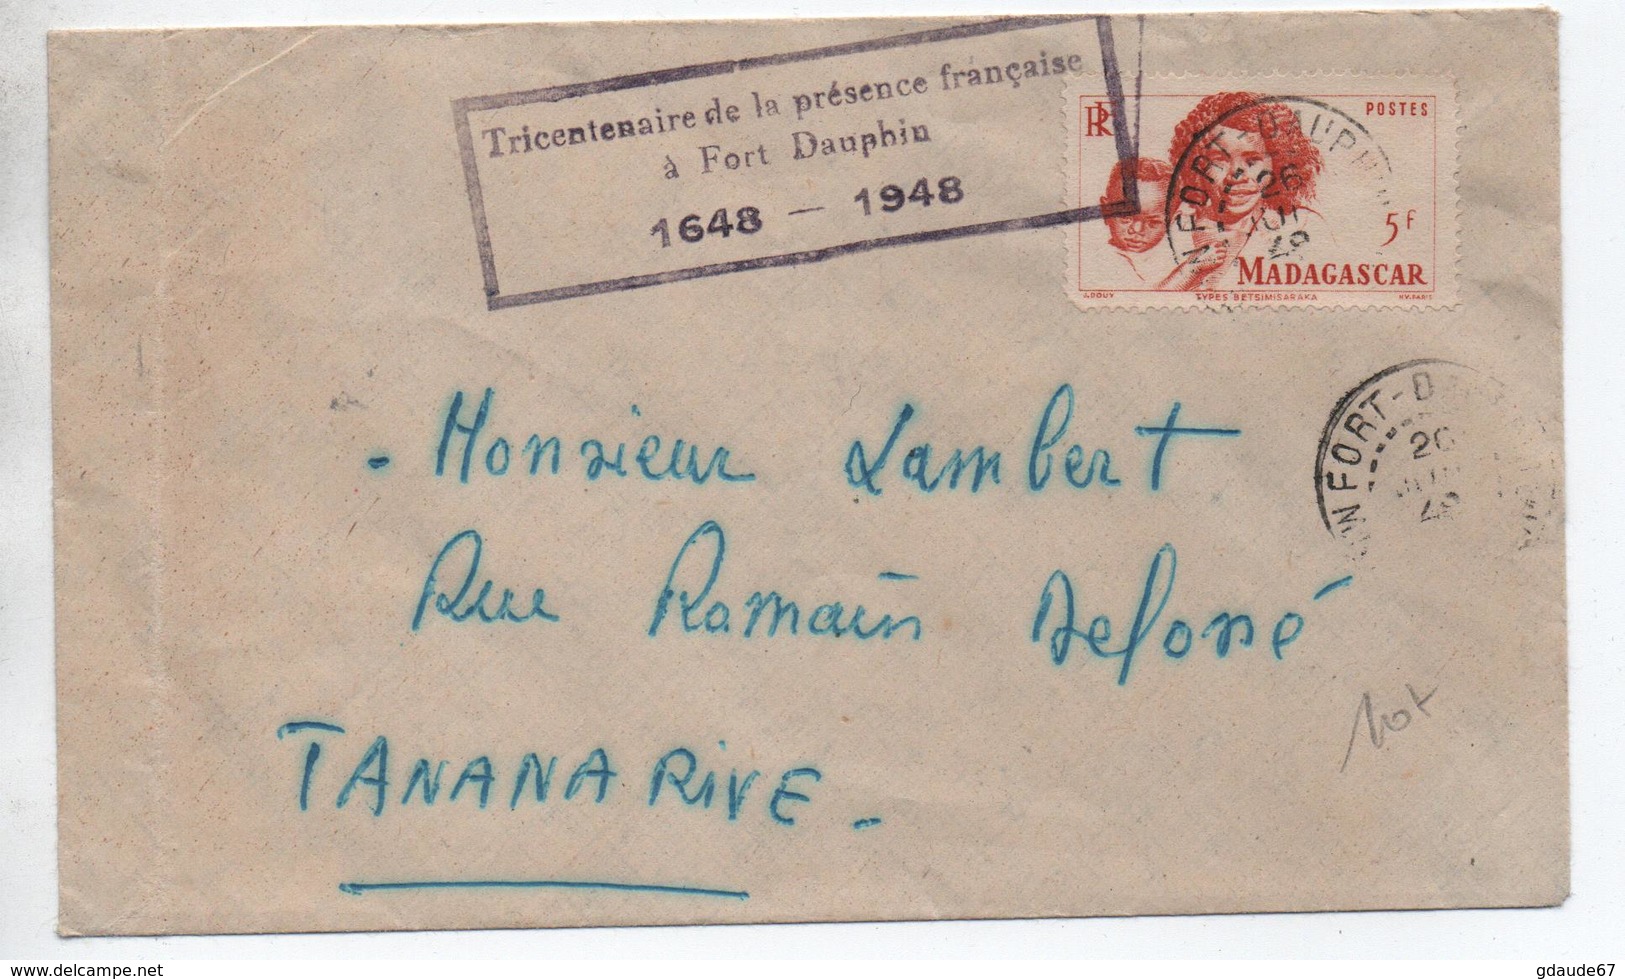 1948 - ENVELOPPE De FORT DAUPHIN (MADAGASCAR) Avec CACHET "TRICENTENAIRE DE LA PRESENCE FRANCAISE A FORT DAUPHIN 1648" - Cartas & Documentos